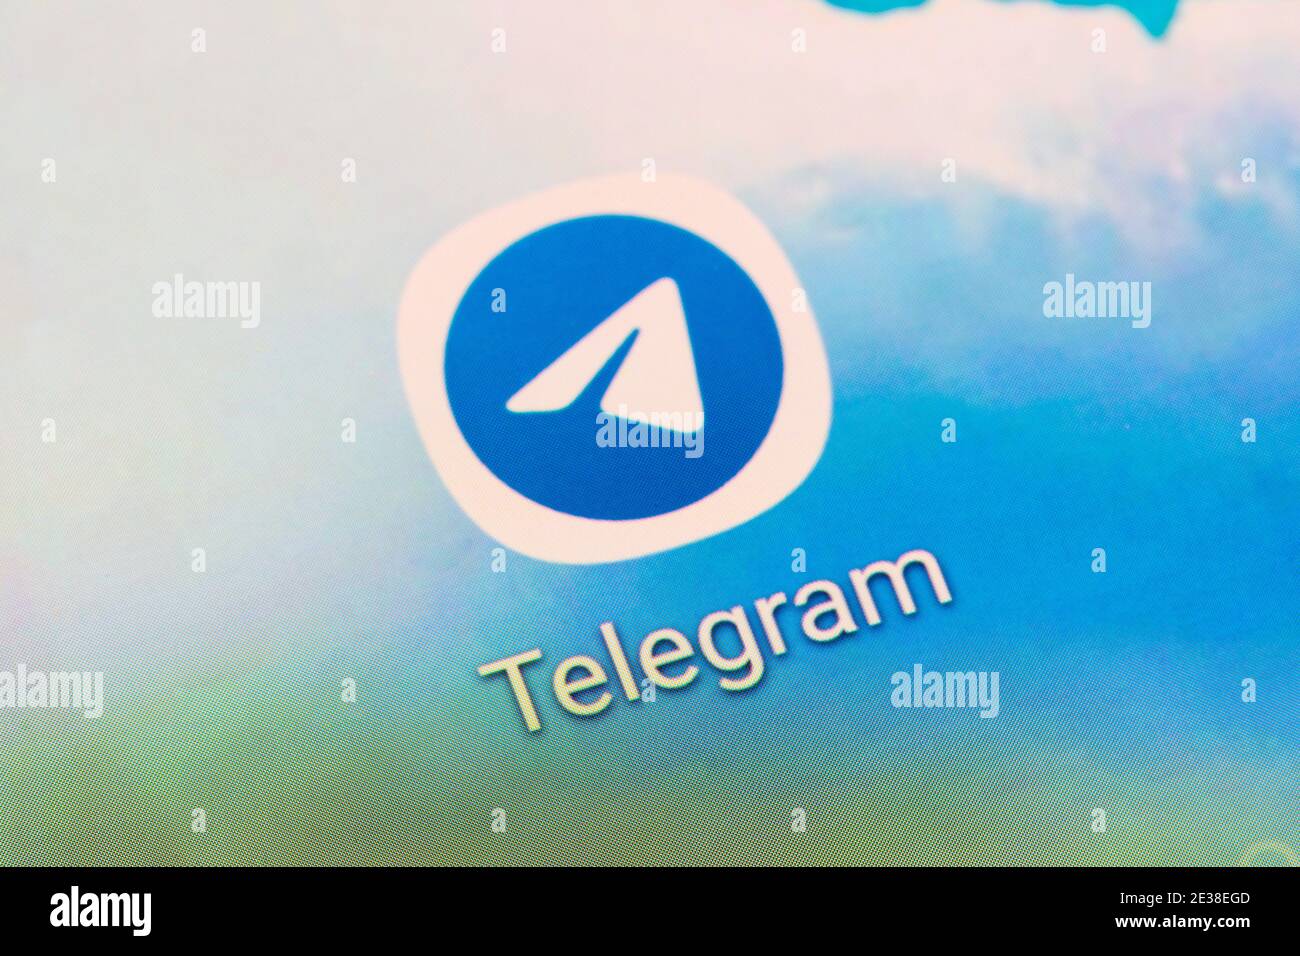 Un gros plan de l'application Telegram - un logiciel de messagerie instantanée et un service d'application gratuits, multi plates-formes et basés sur le cloud - sur un écran de smartphone Banque D'Images